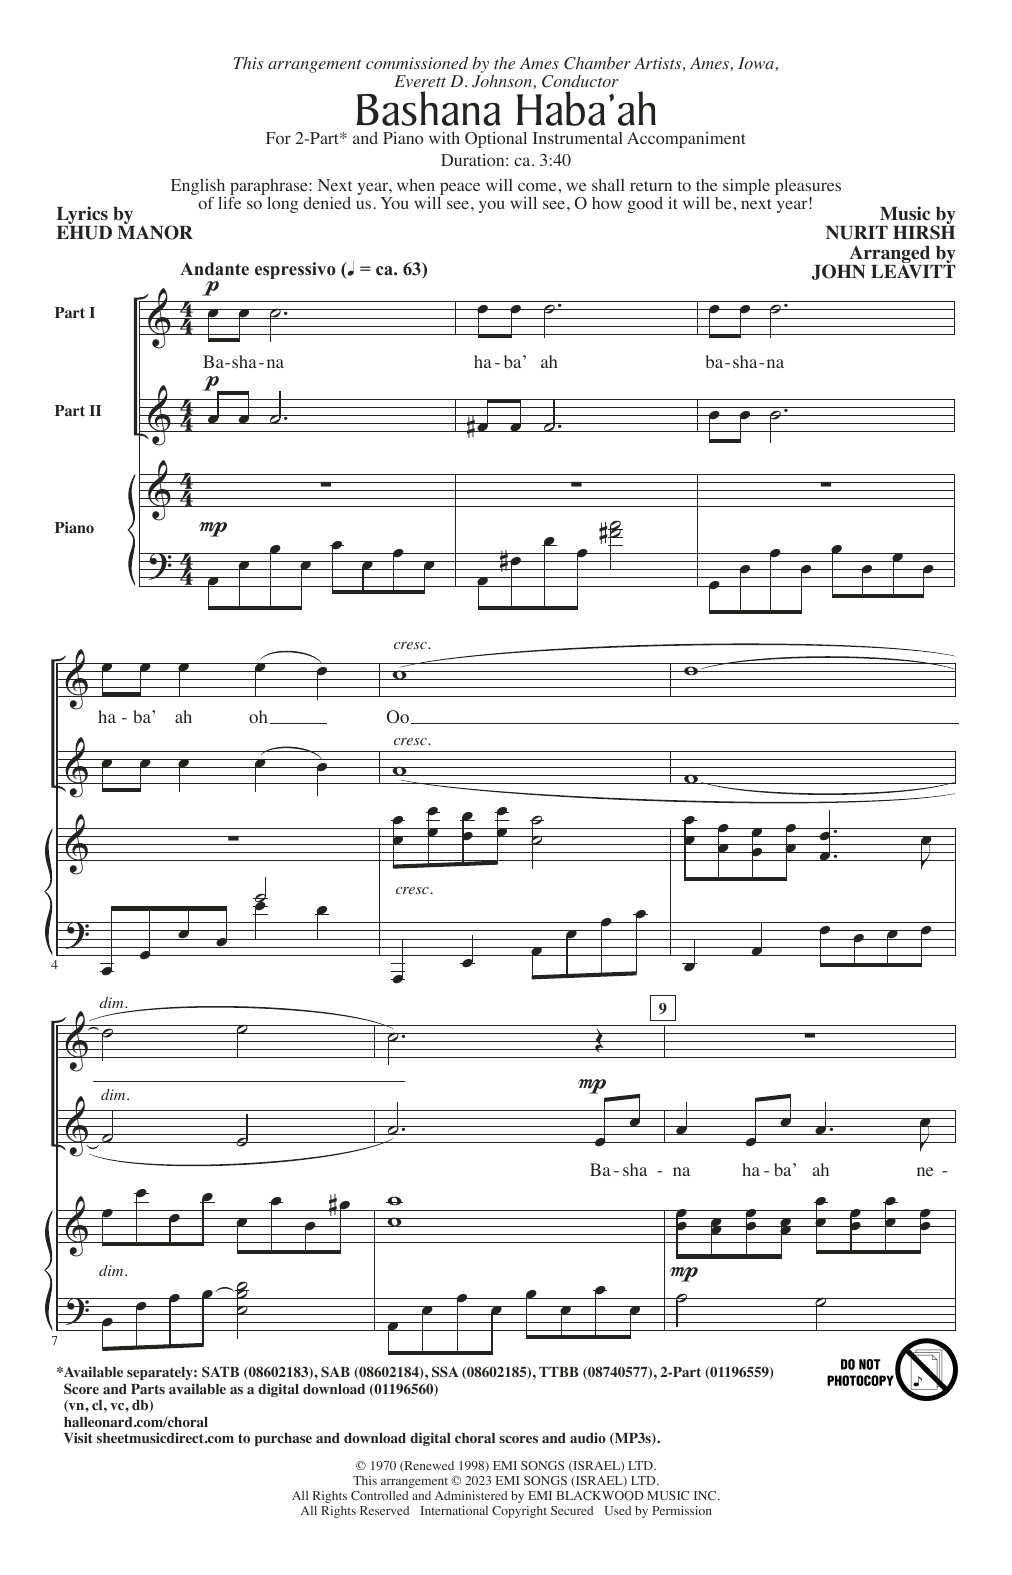 Nurit Hirsh Bashana Haba'ah (arr. John Leavitt) Sheet Music Notes & Chords for TTBB Choir - Download or Print PDF